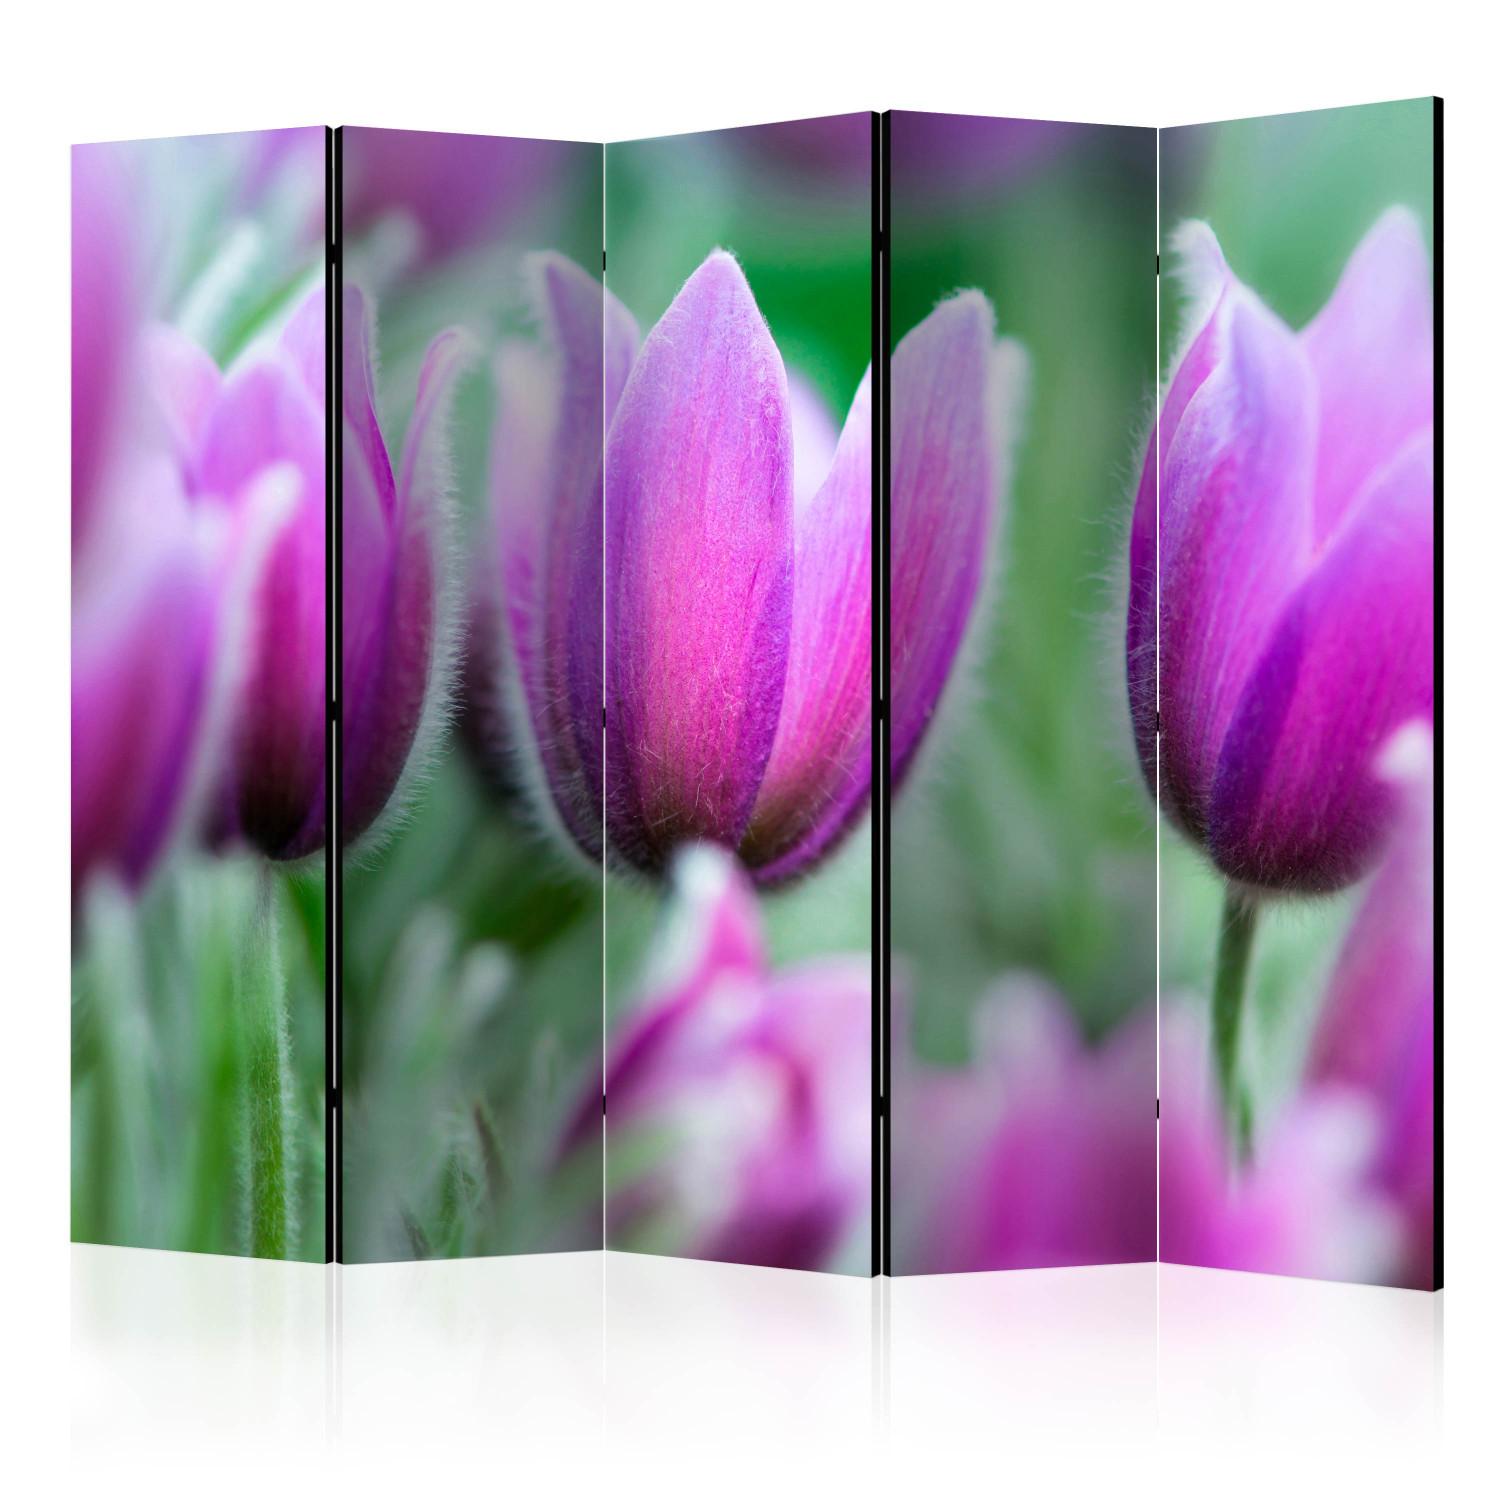 Biombo decorativo Tulipanes Violetas Primaverales - flores coloridas en verde